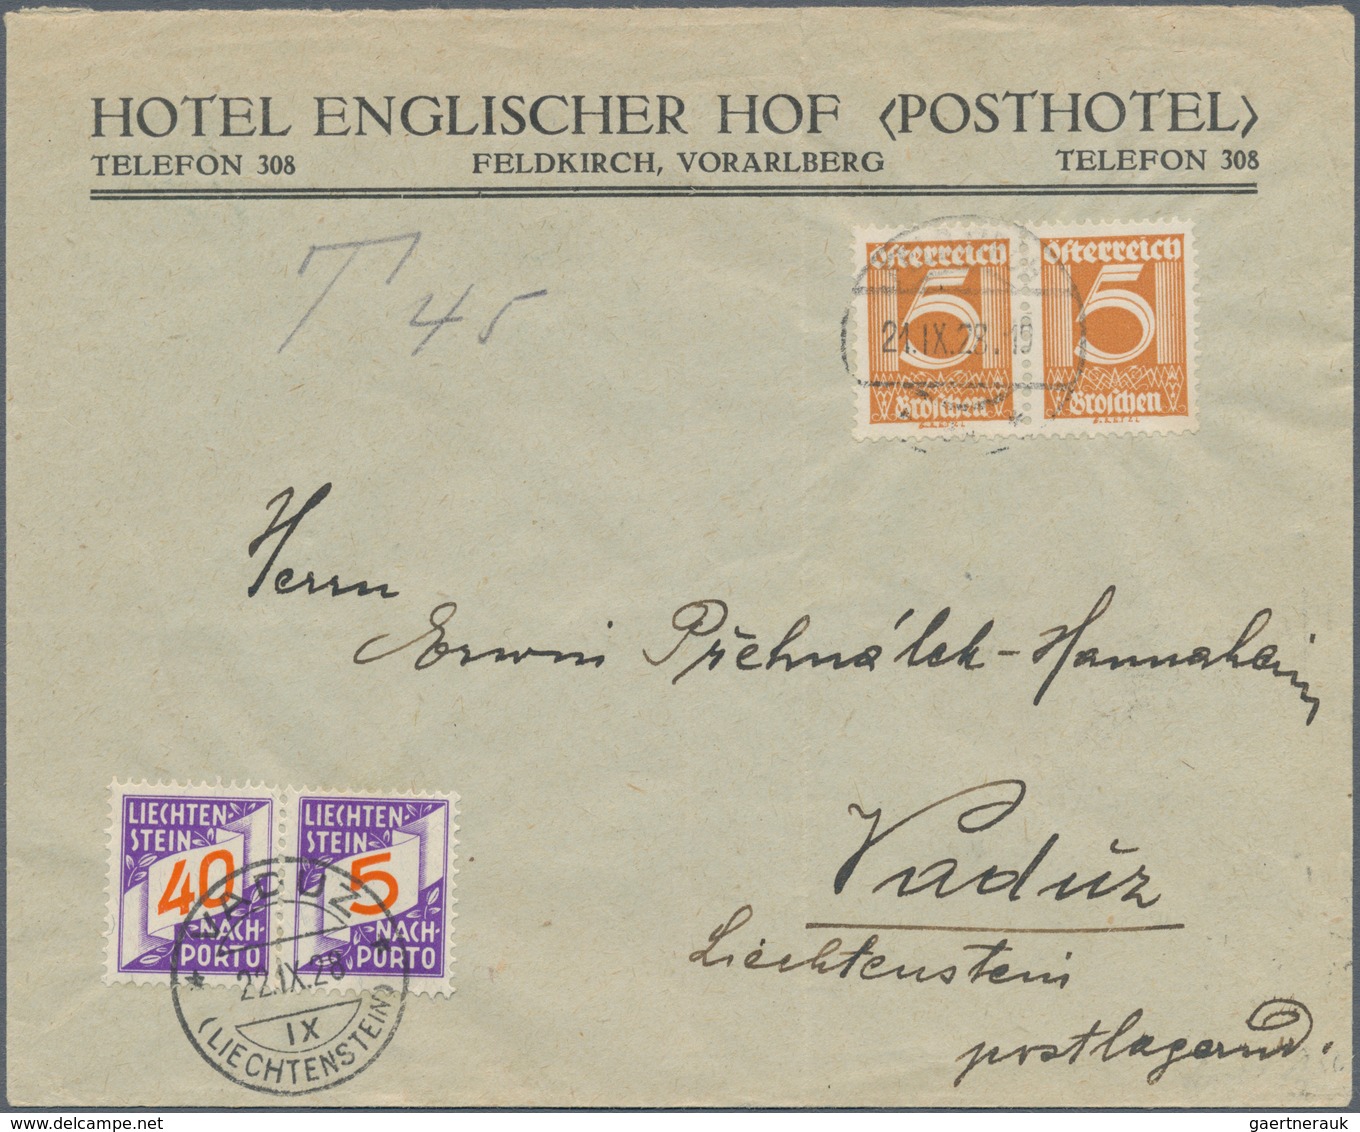 Liechtenstein: 1920/66, Posten von ca. 30 Briefe, AK und gebrauchten Ganzsachen, dabei gute Bild-Gs.